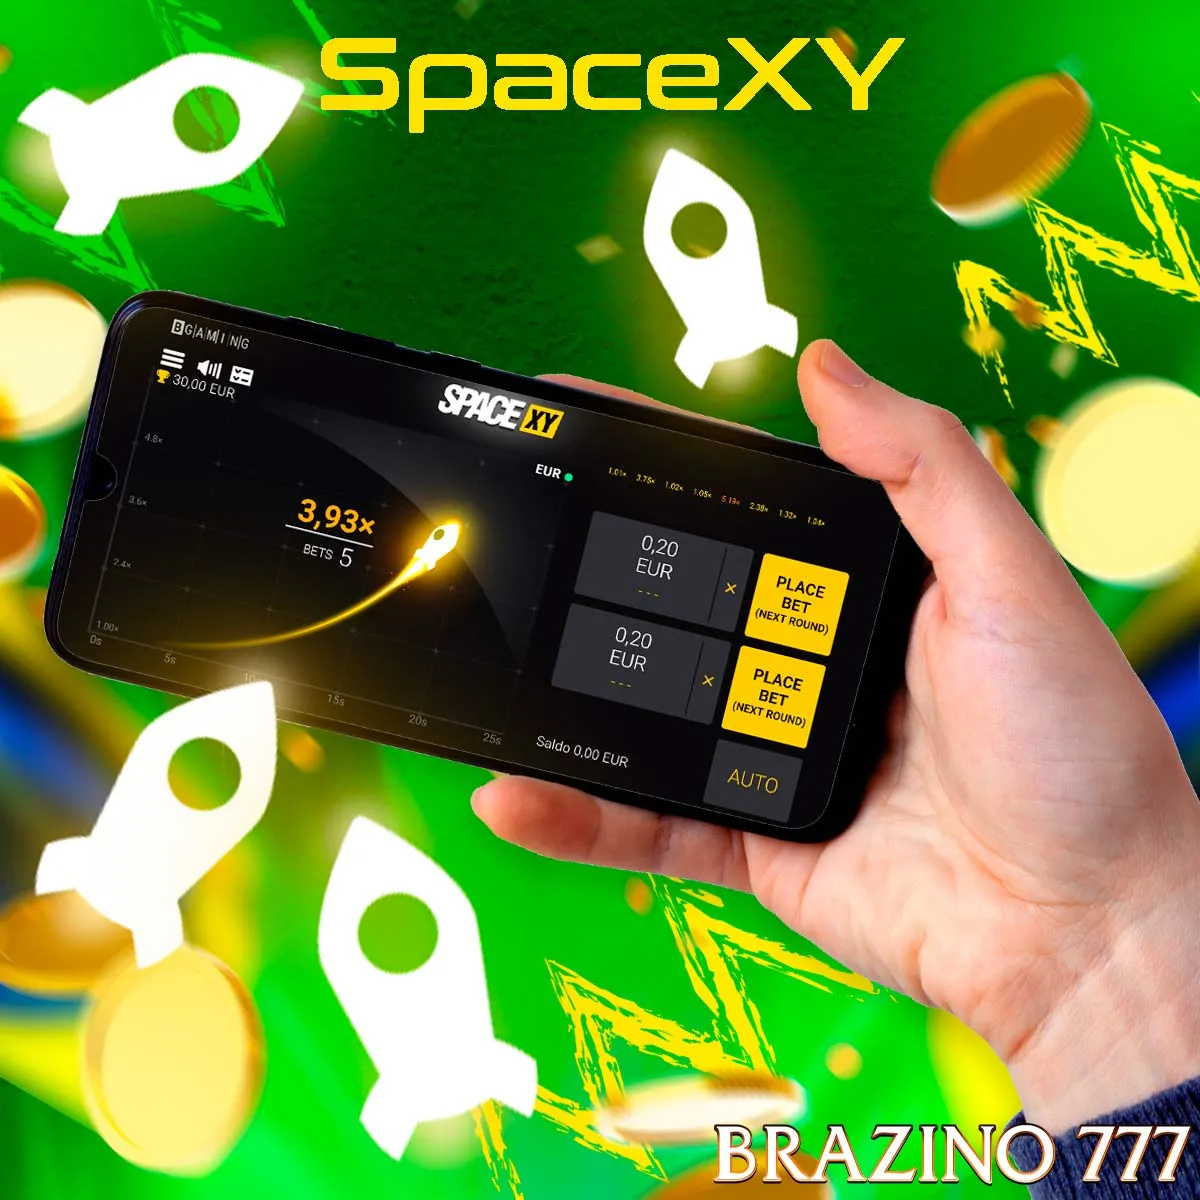 O popular jogo Space-XY no Cassino Brazino777 no Brasil